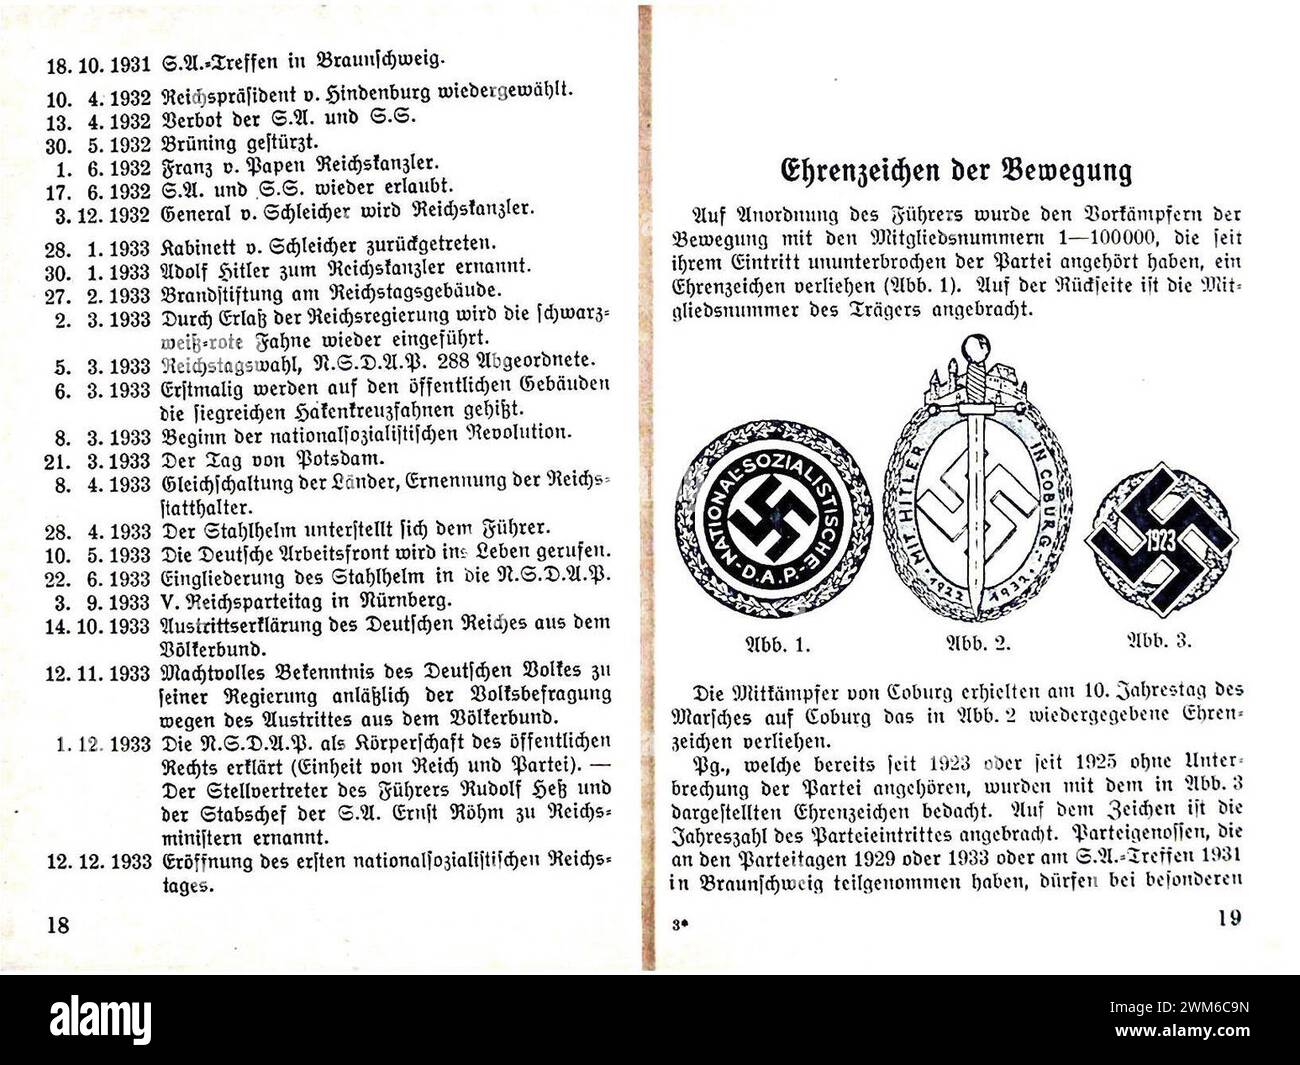 Beppo Bässler - Aufbau und Abzeichen der NSDAP SA SS HJ po NSBO DAF 1934 - 18-19 Tagen Ehrenzeichen der Bewegung (divise della struttura del partito nazista). Opuscolo di propaganda) Foto Stock